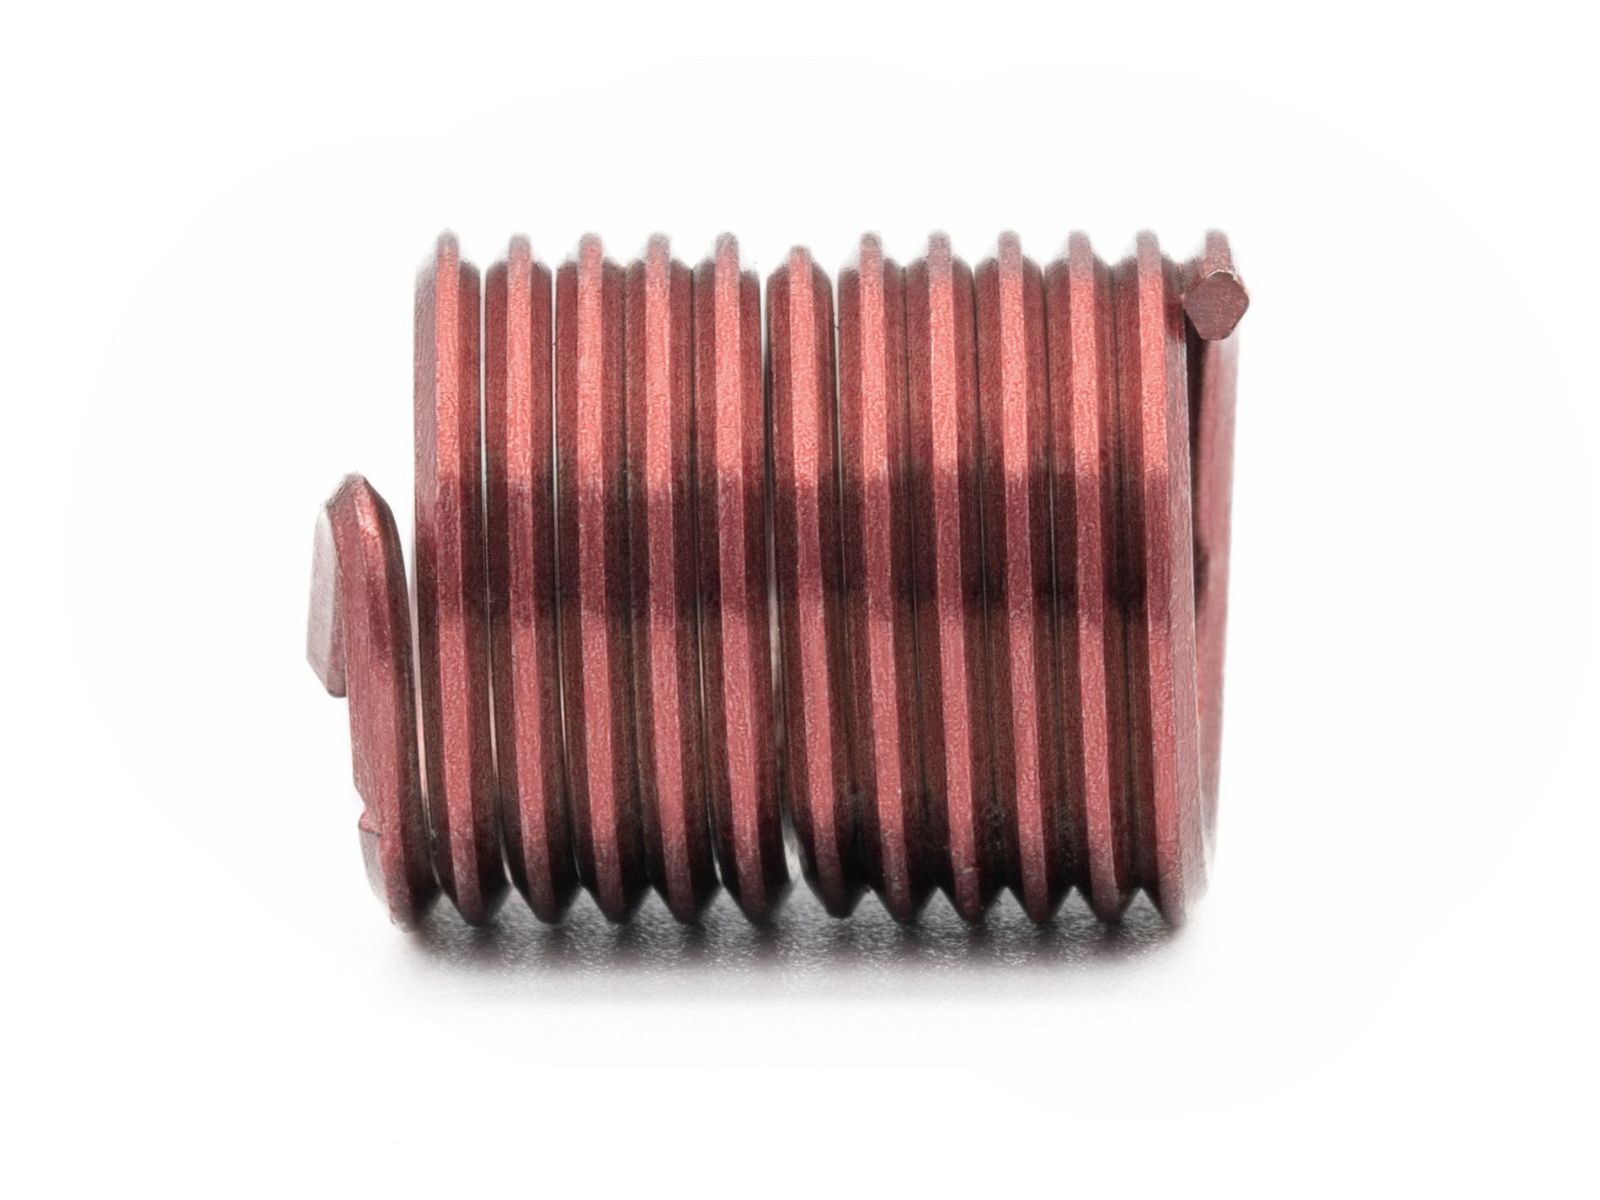 BaerCoil Wire Thread Inserts UNF 1/2 x 20 - 2.0 D (25.4 mm) - screw grip (screw locking) - 100 pcs.